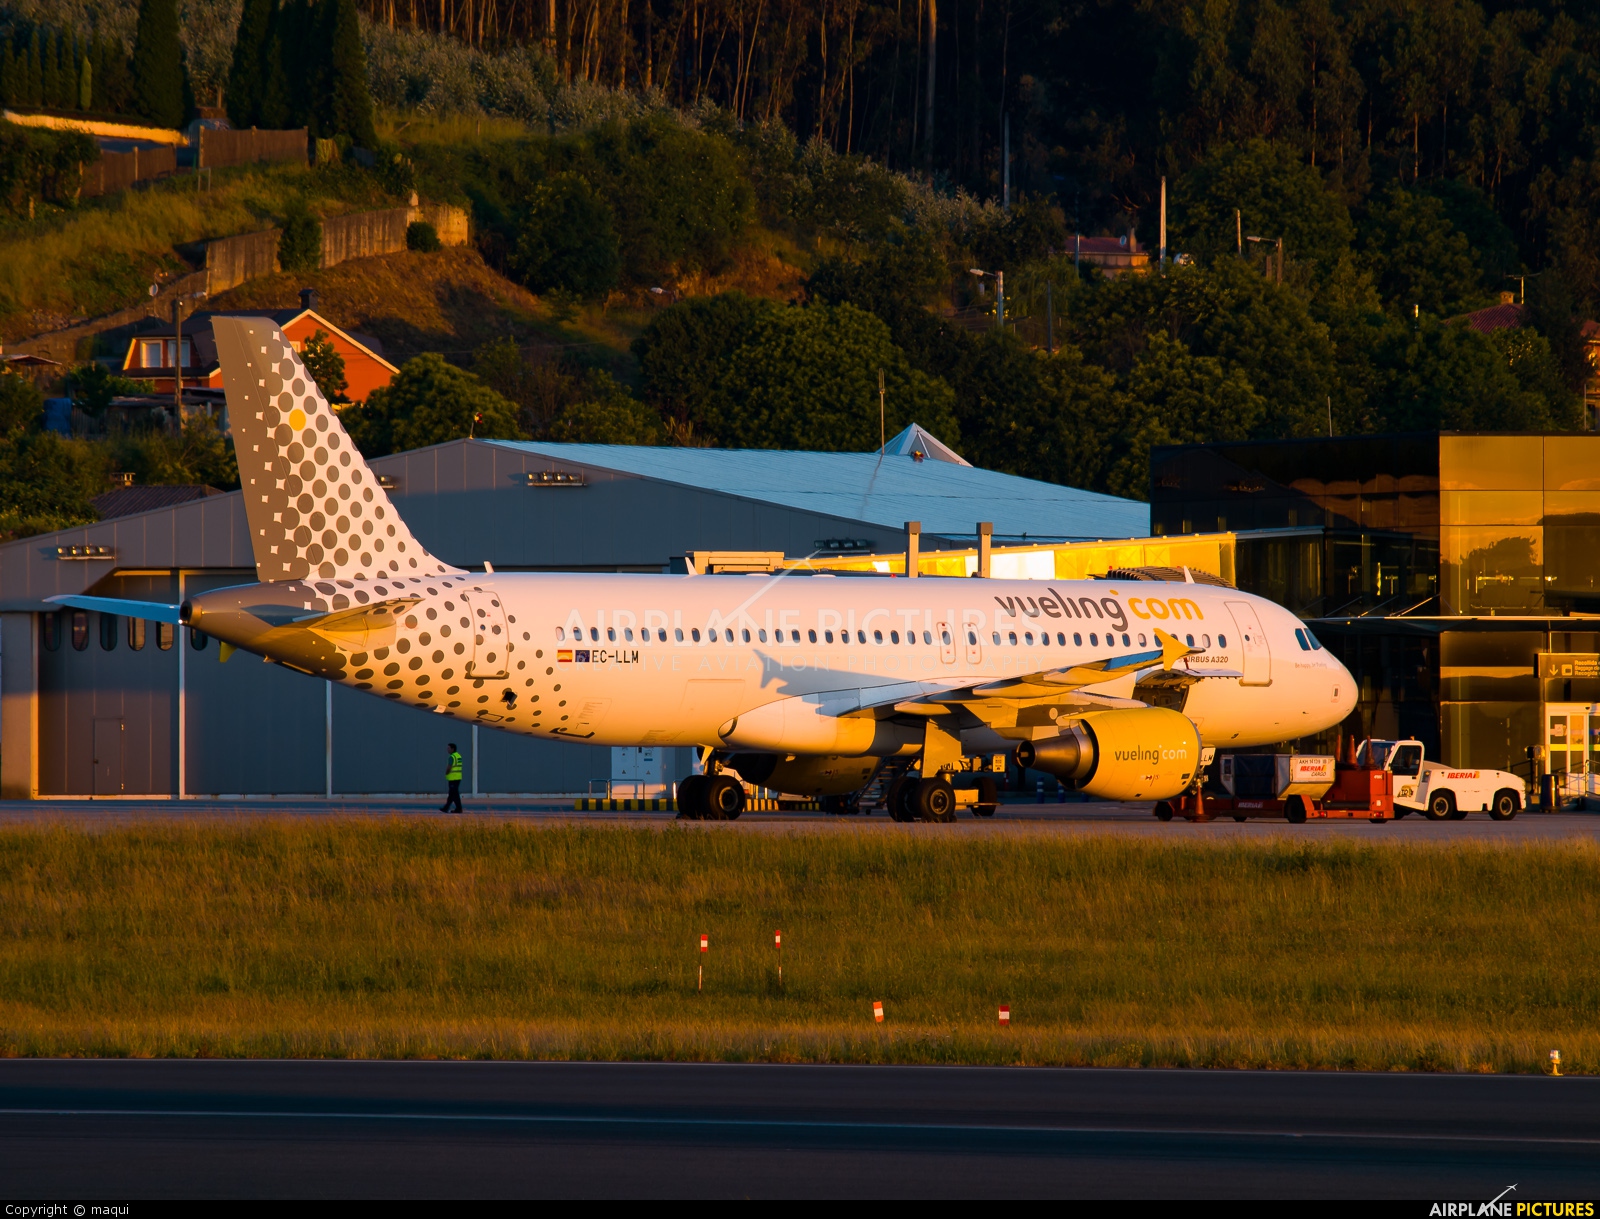 Vueling Airlines EC-LLM aircraft at La Coruña